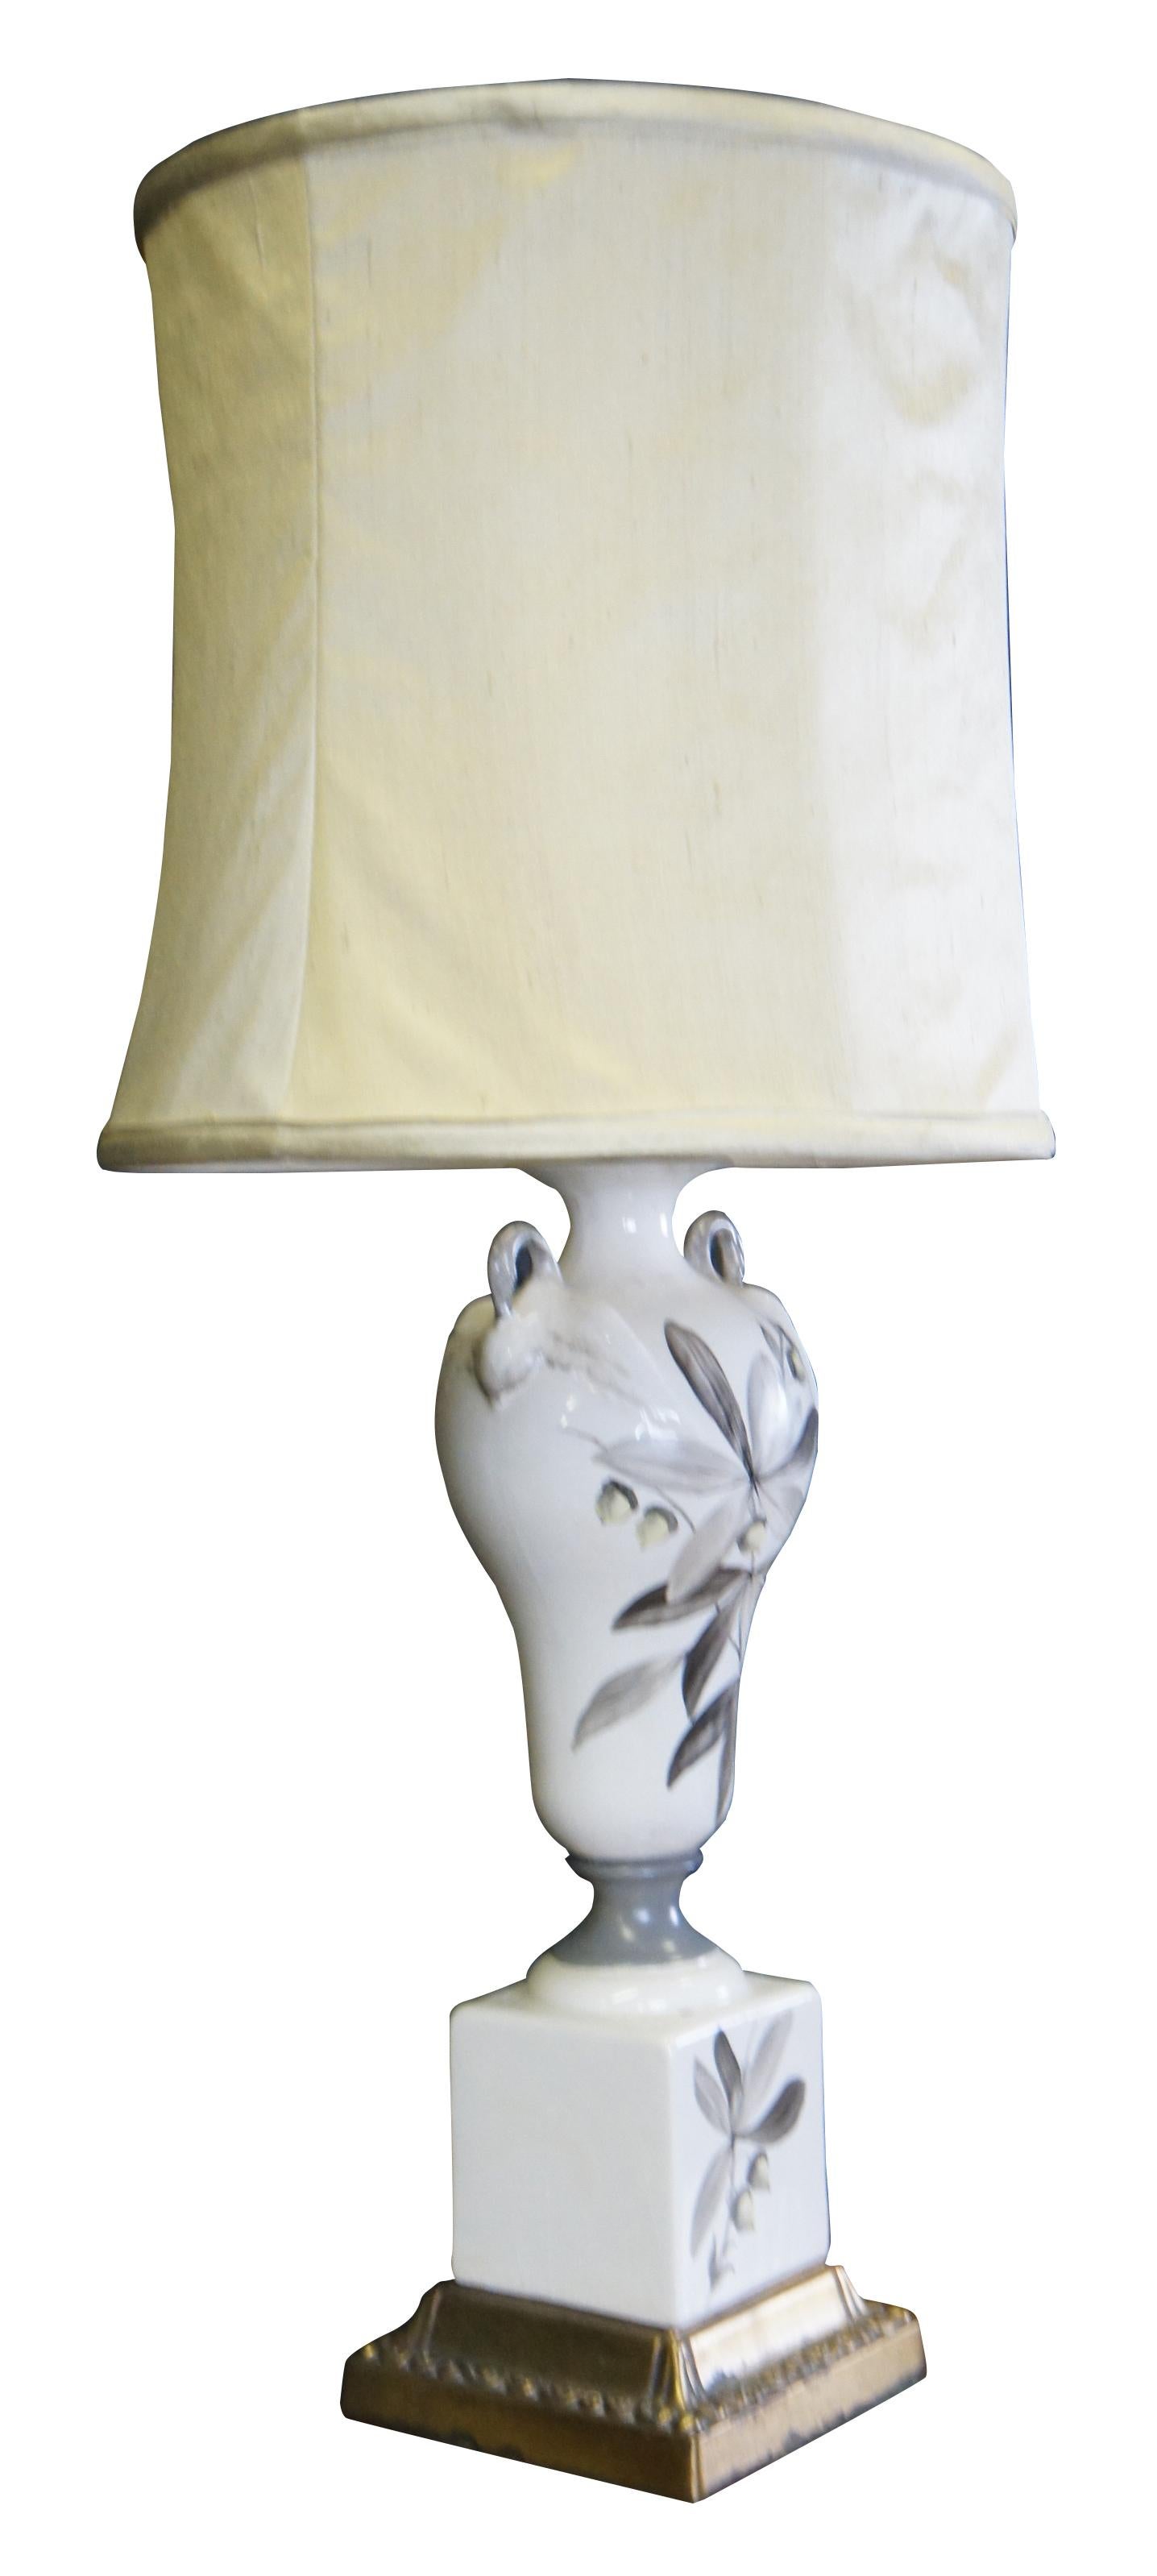 Figural swan lamp.

Measures: 29.5